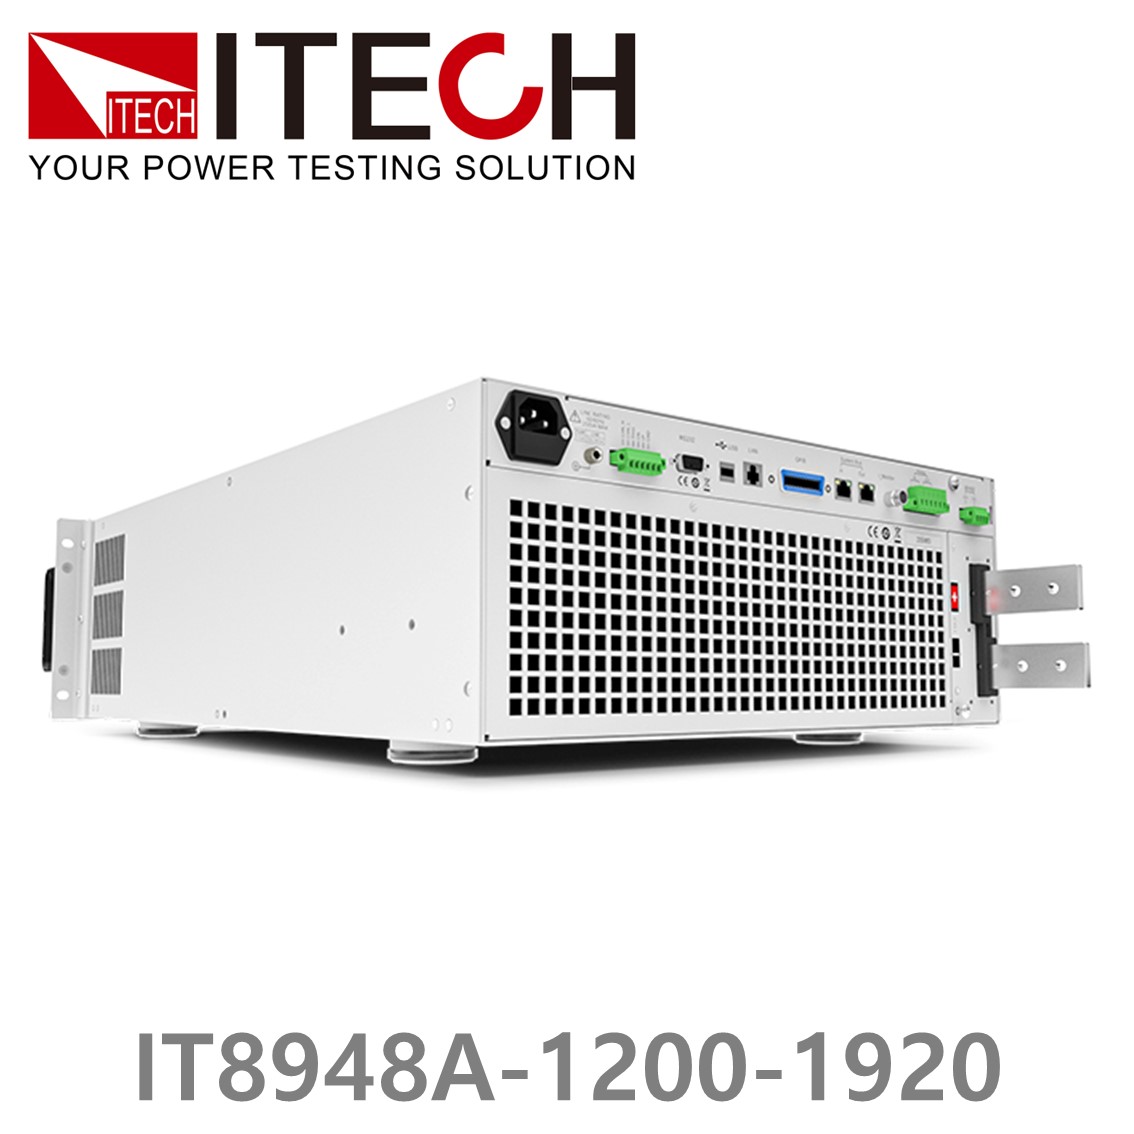 [ ITECH ] IT8948A-1200-1920  고성능 고전력 DC 전자로드 1200V/1920A/48kW (37U)